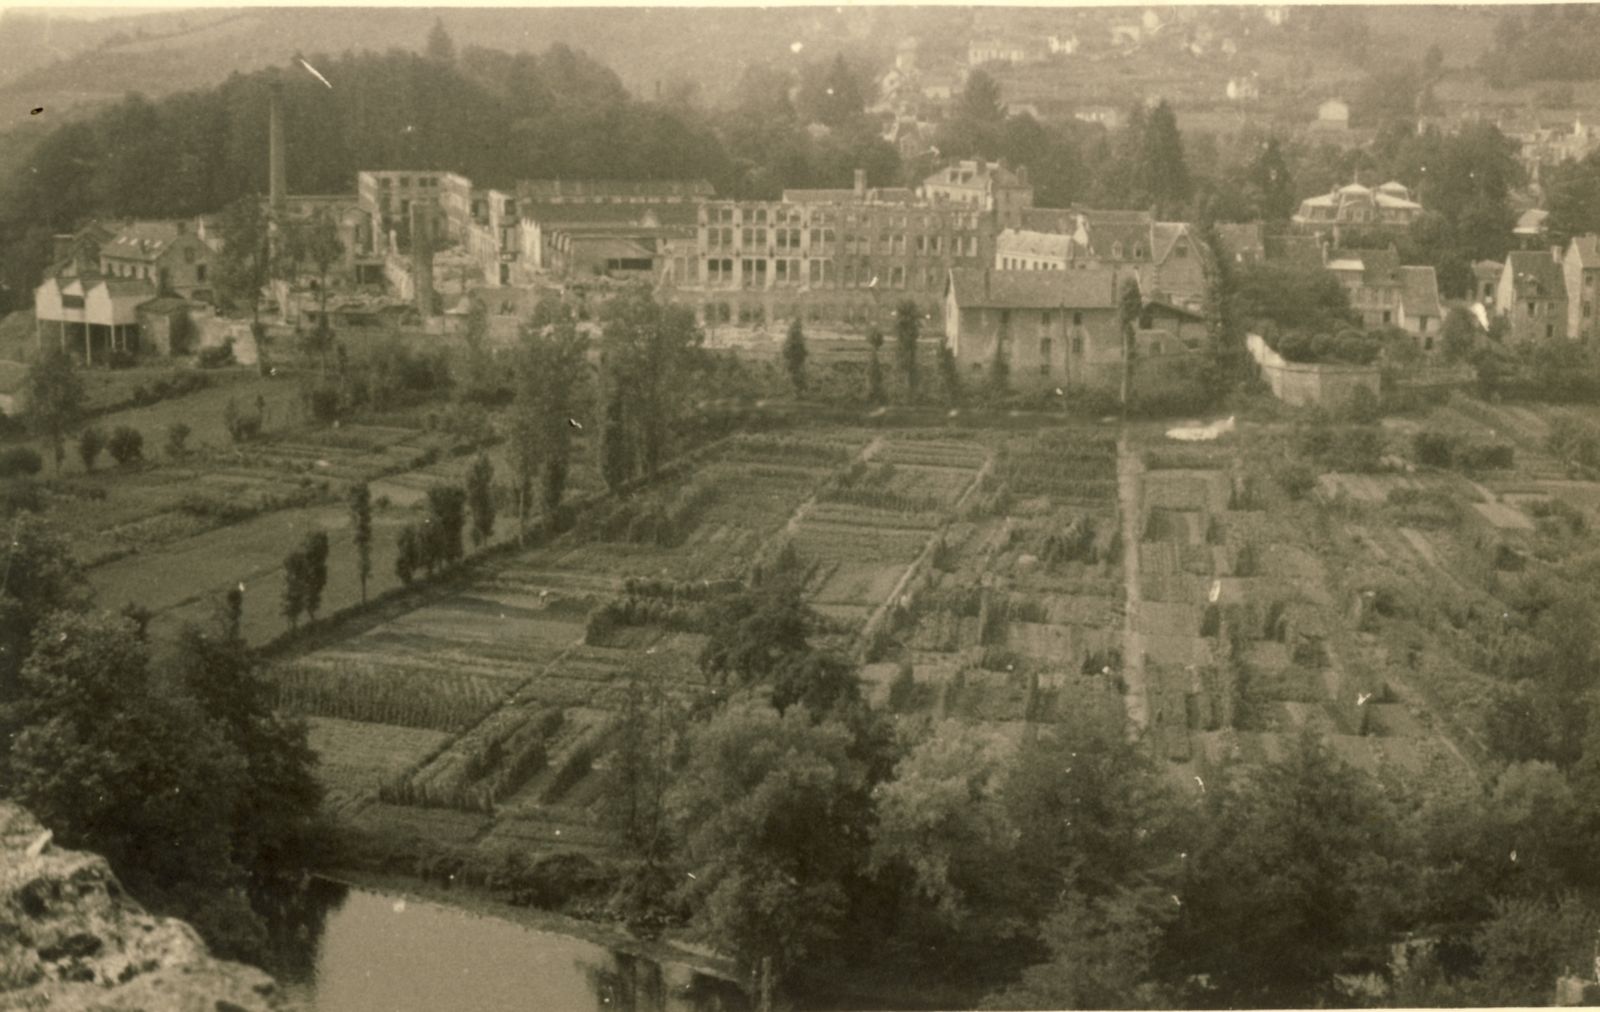 Les décombres de l'usine, juillet 1944. Au centre des ruines, les sheds de la filature, préservés de l'incendie (coll. part.)